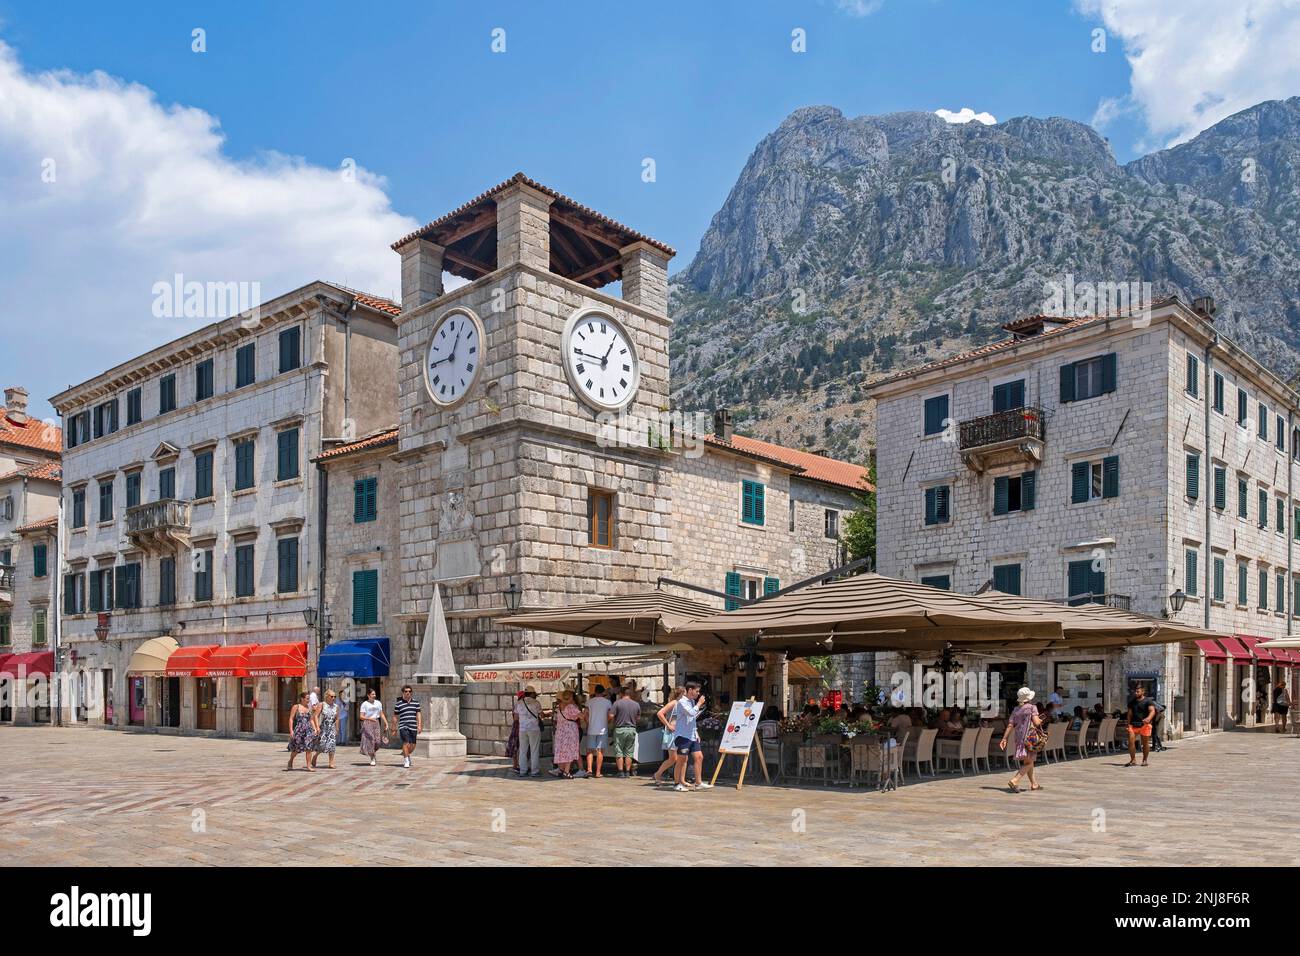 Uhrenturm aus dem 17. Jahrhundert auf dem Arms Square, Hauptplatz in der venezianischen Altstadt von Kotor, Südwesten Montenegros Stockfoto